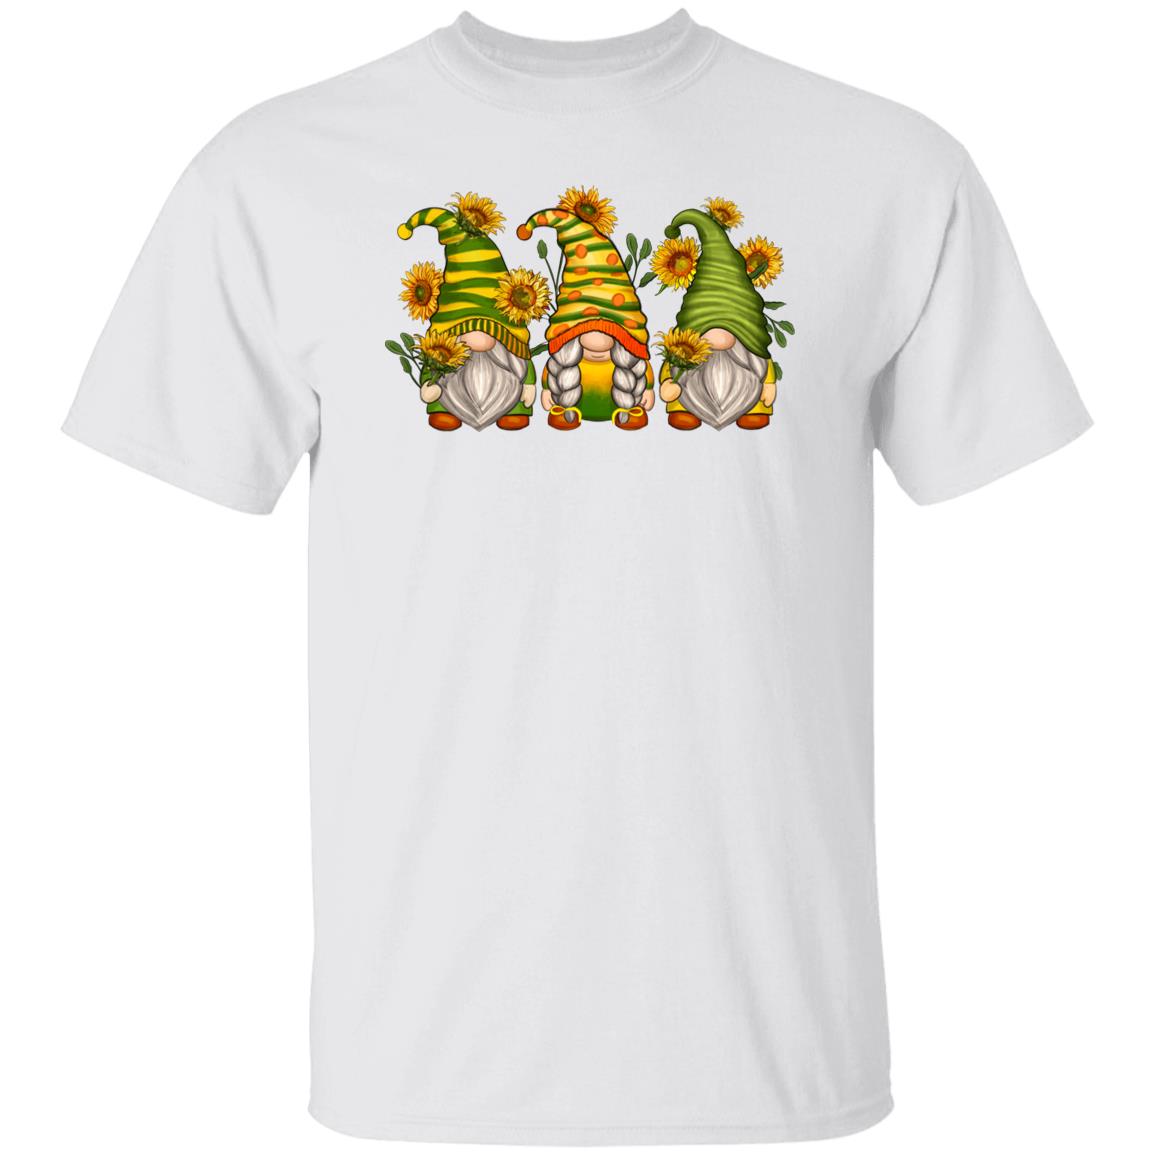 Sunflower Gnomes Unisex shirt sunflowers lover Christmas gift White Sand-Family-Gift-Planet